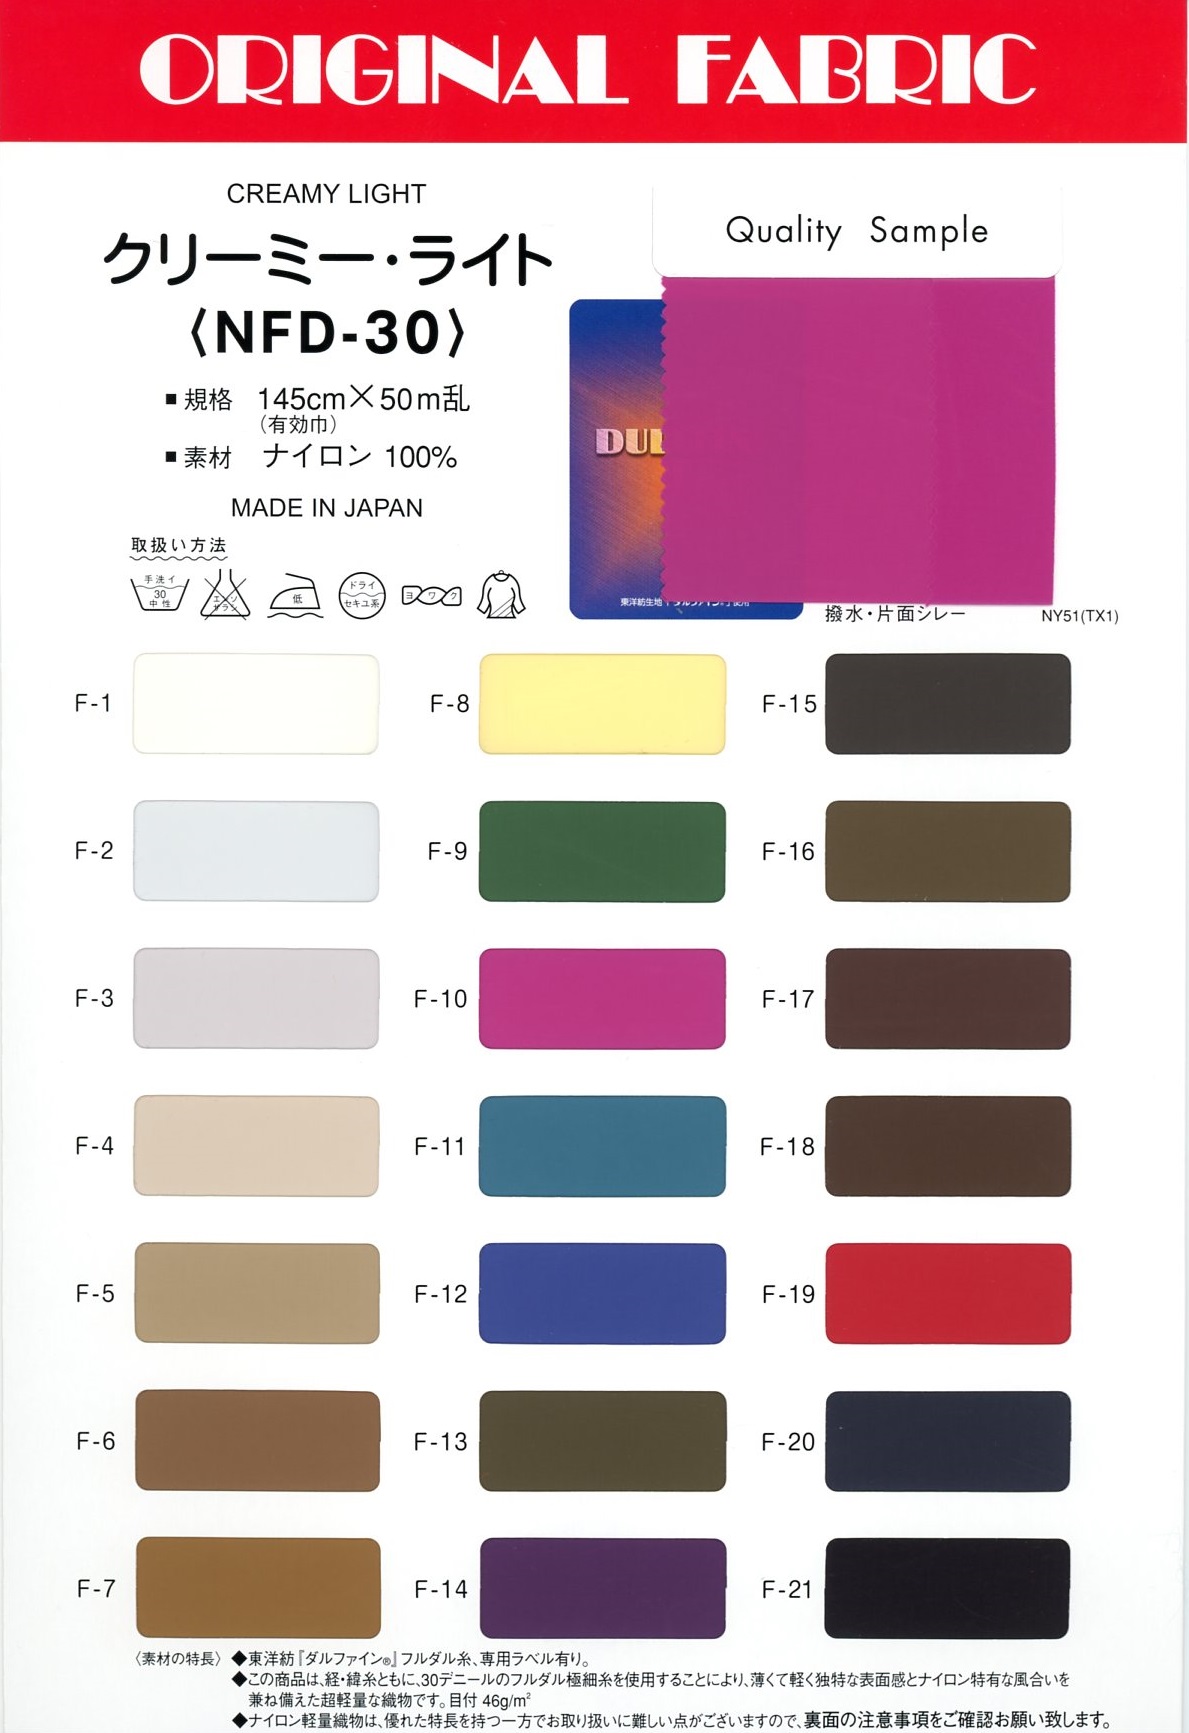 NFD-30 Luz Cremosa[Fabrica Textil] Masuda